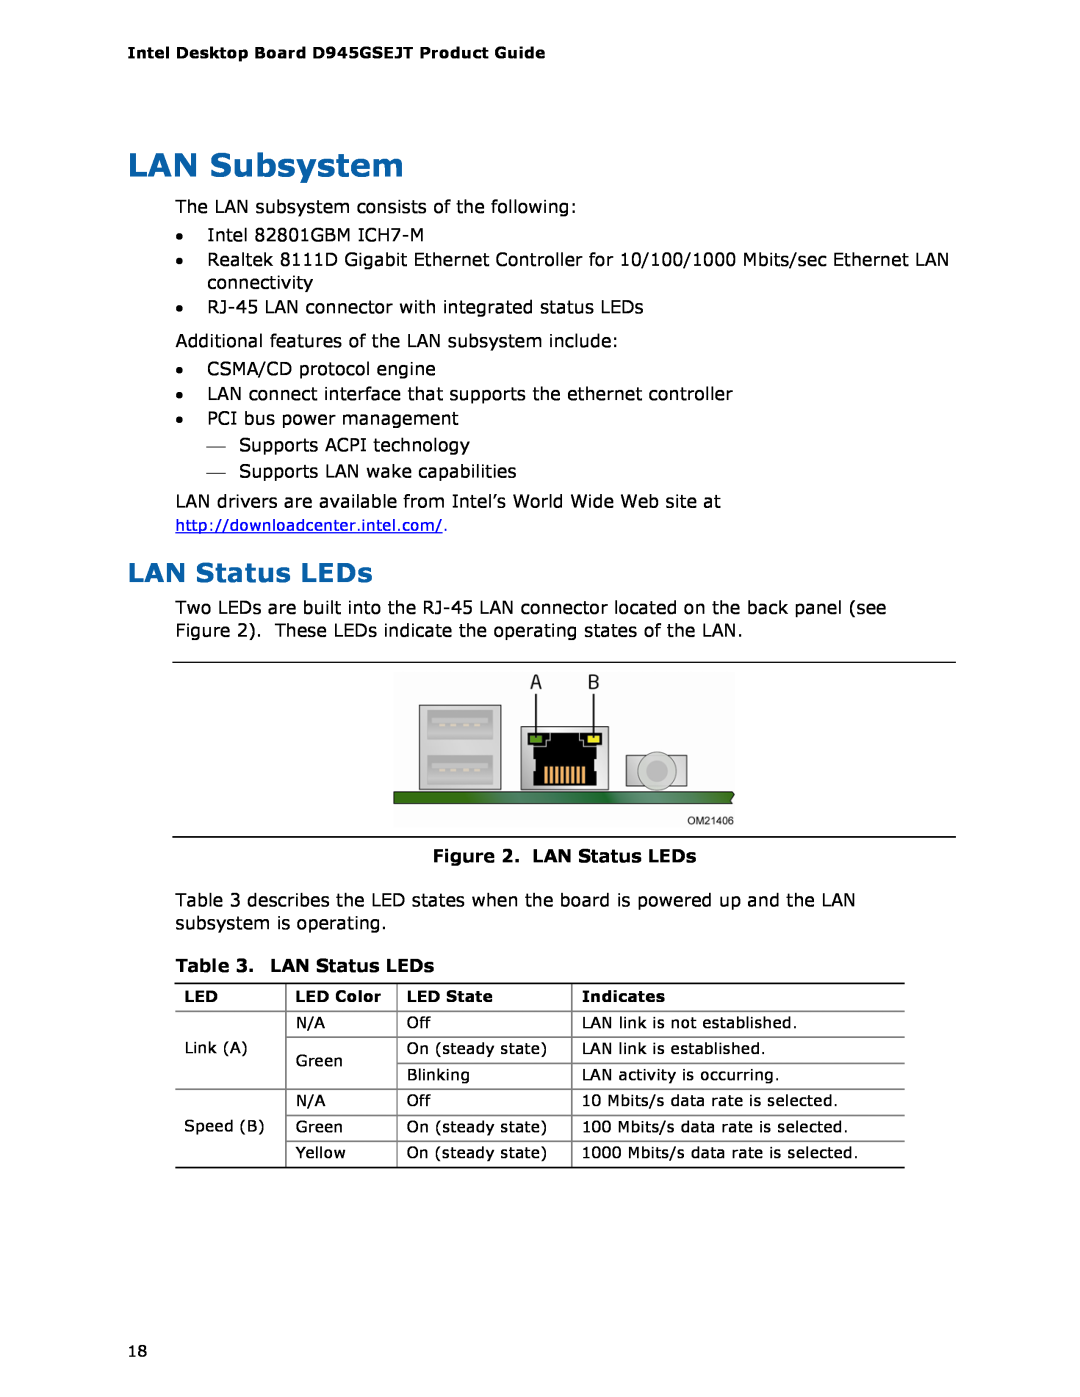 Intel D945GSEJT manual LAN Subsystem, LAN Status LEDs 